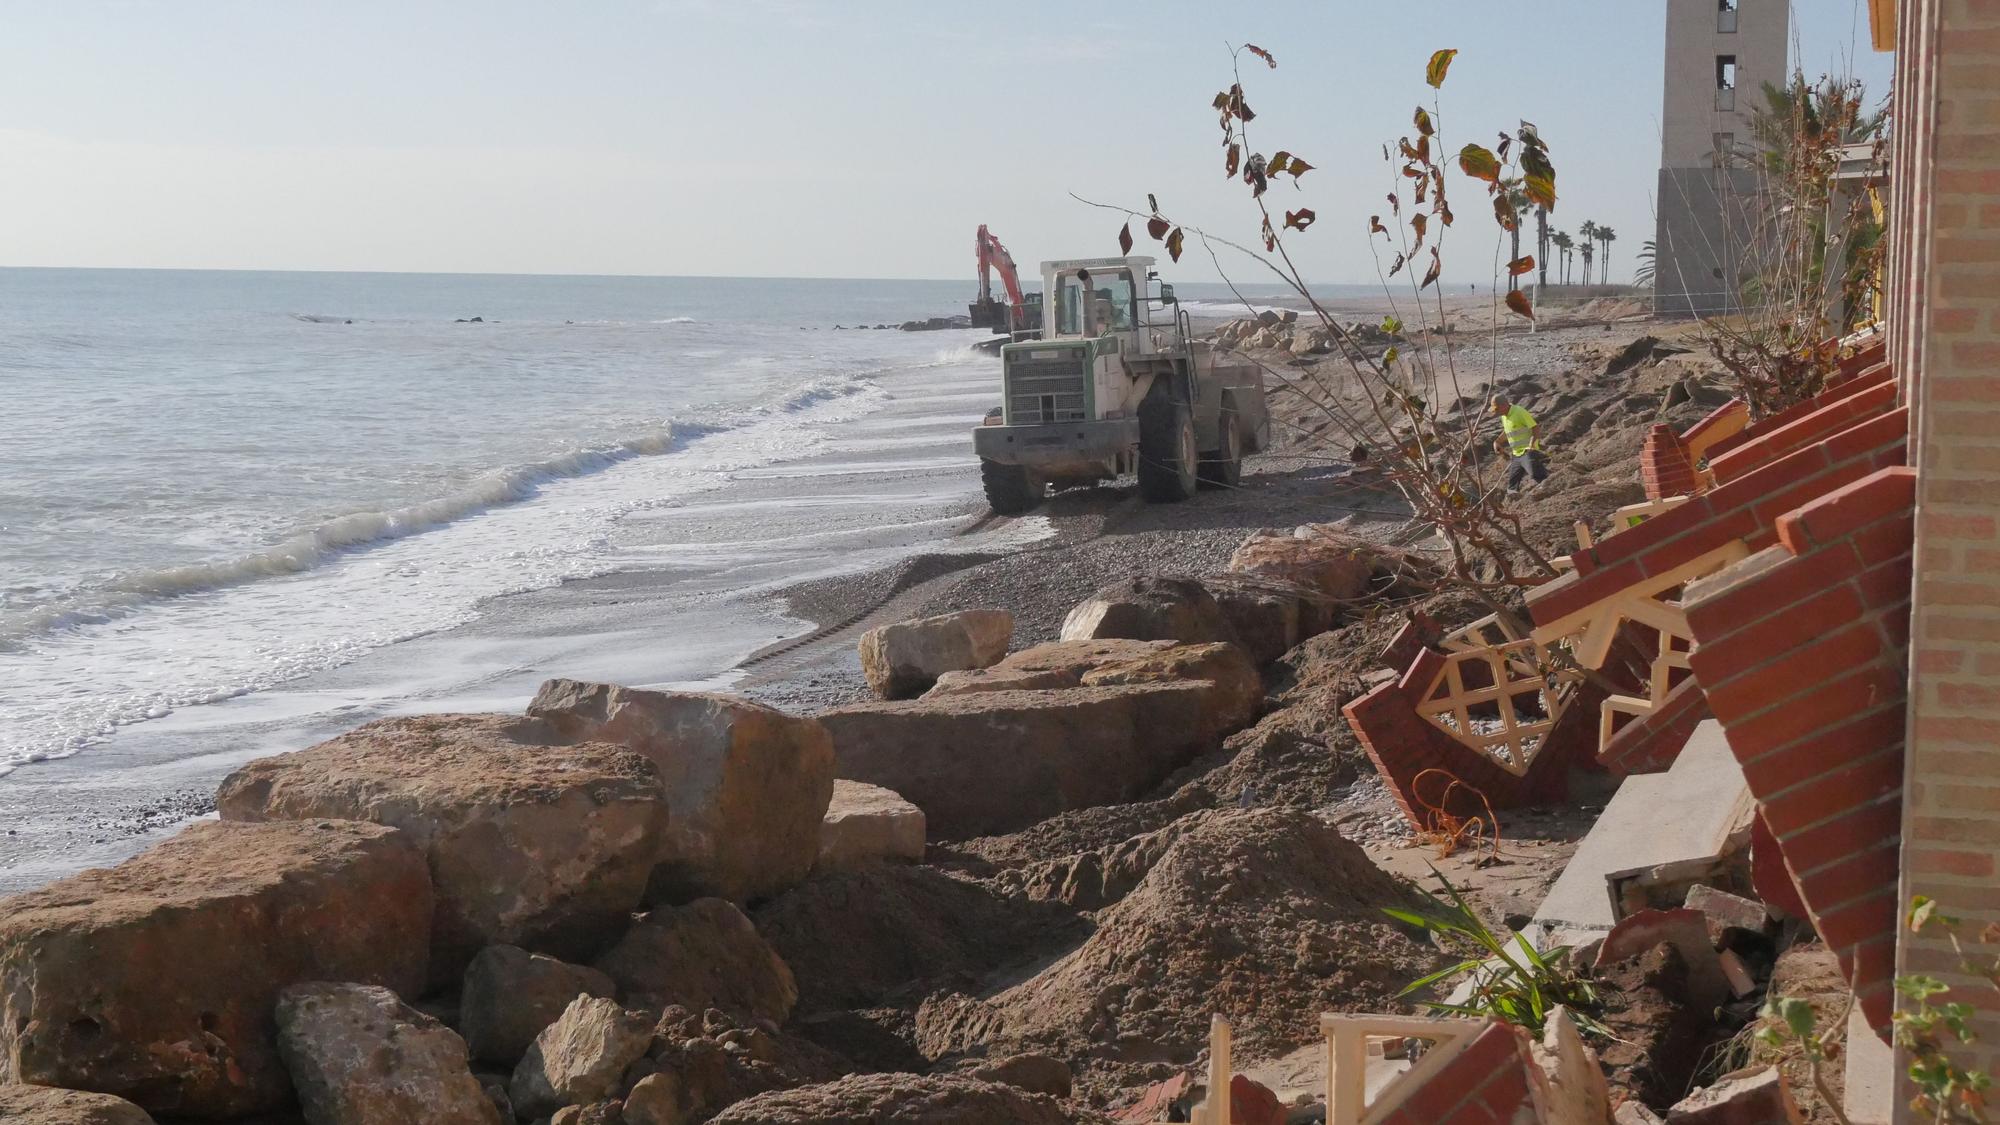 Nules no espera a Costas y actúa para proteger las viviendas de primera línea de playa